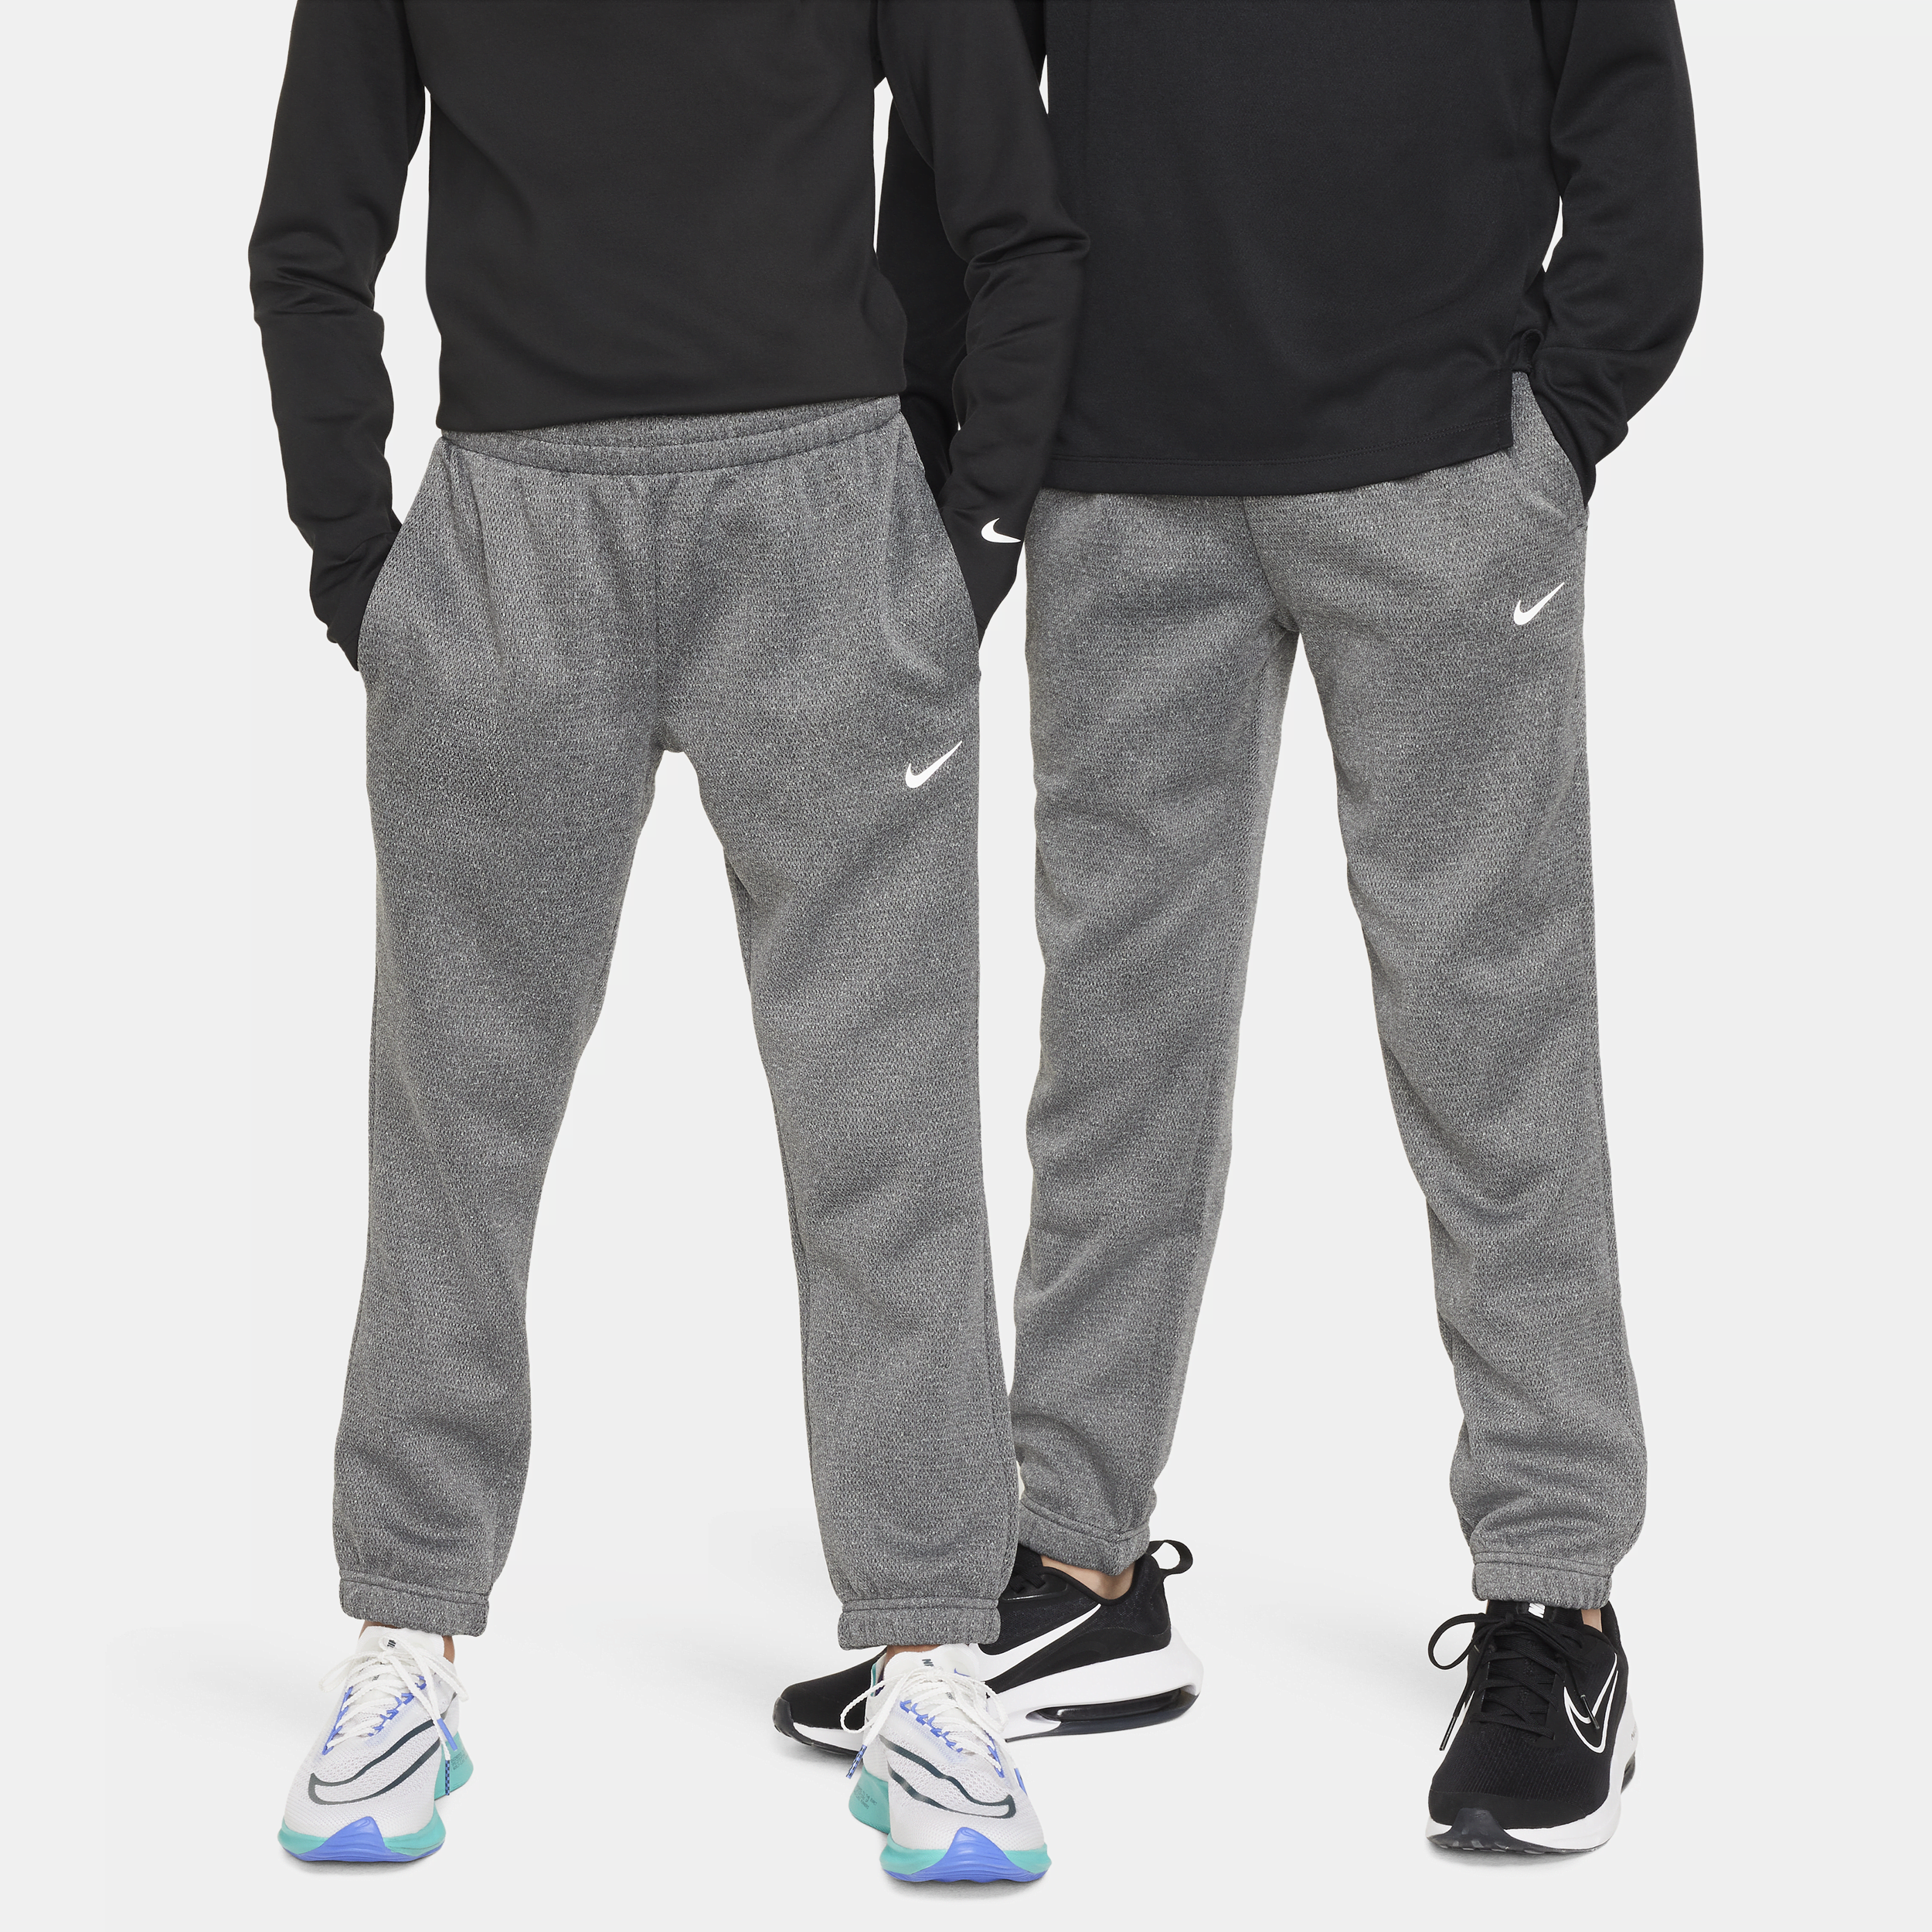 Pantaloni per l'inverno Nike Therma-FIT – Ragazzo/a - Nero